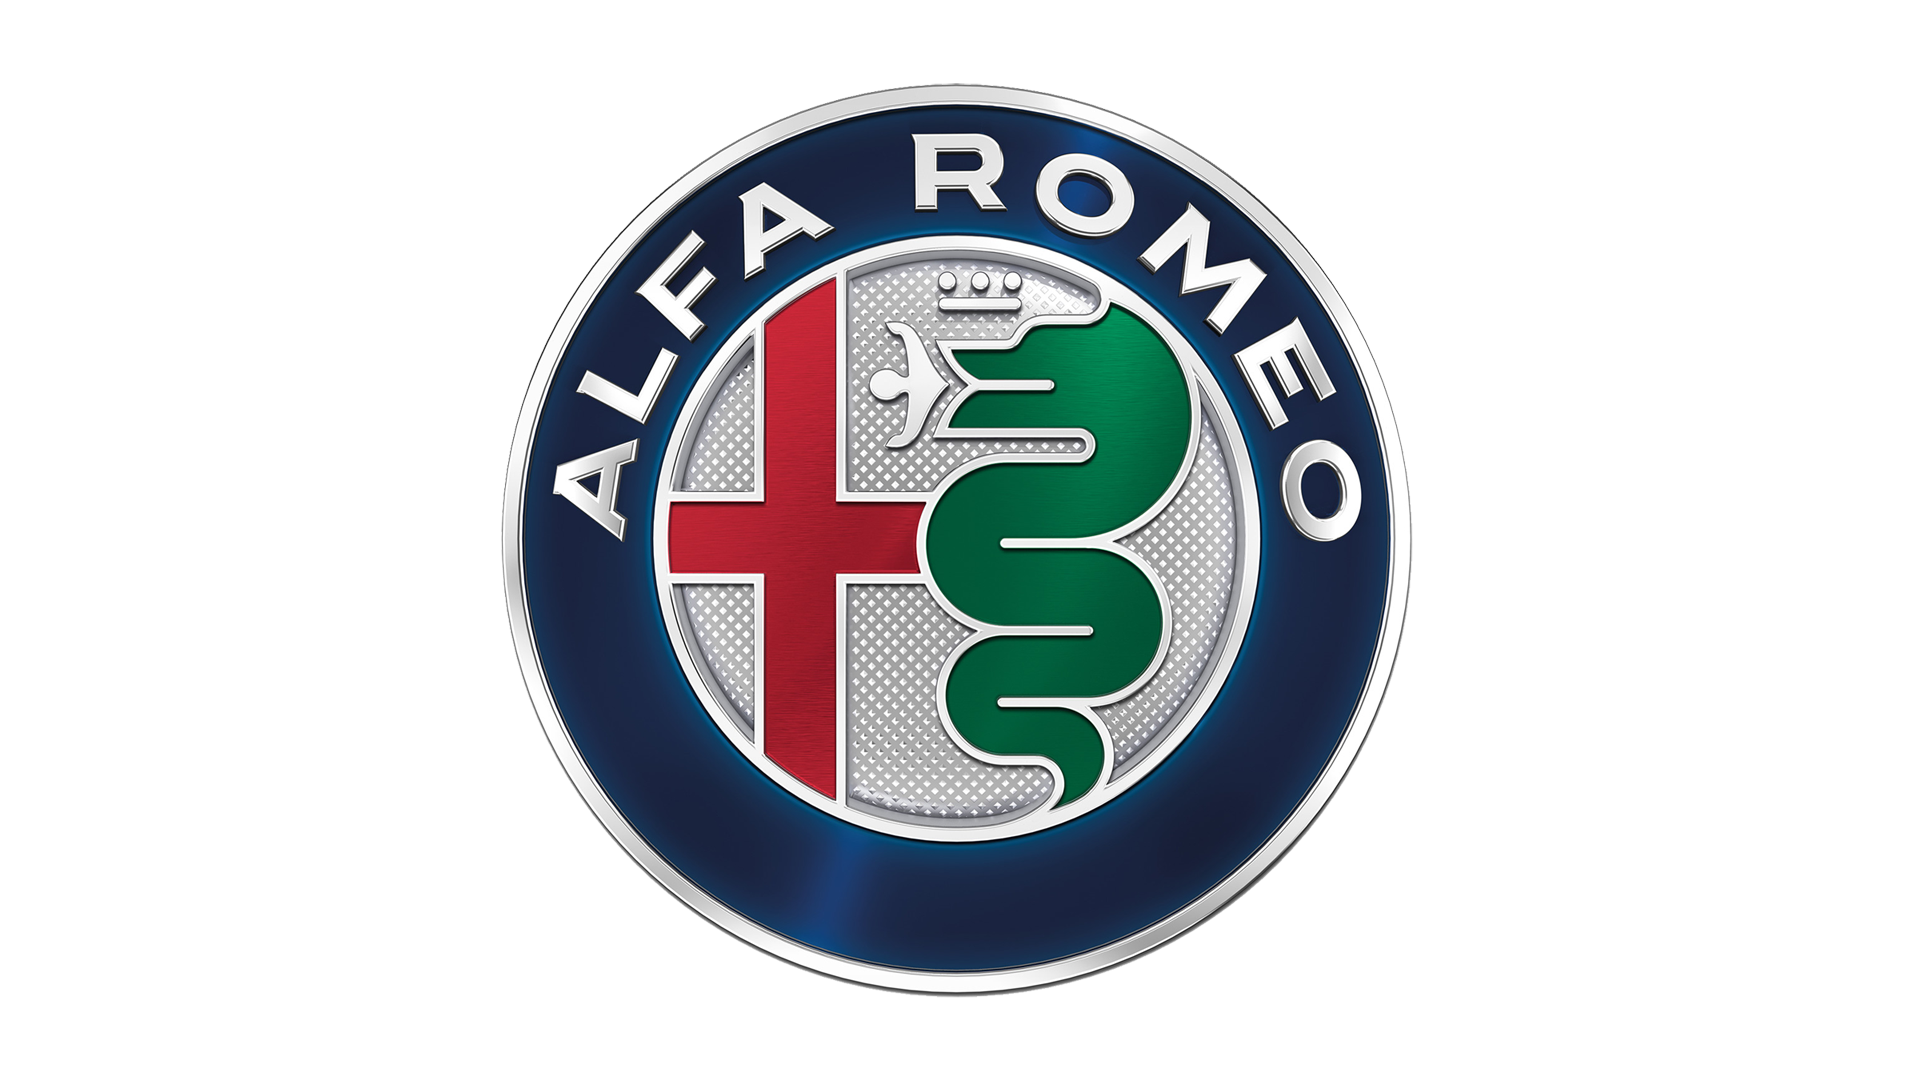 Alfa-Romeo-logo-2015-1920x1080.png